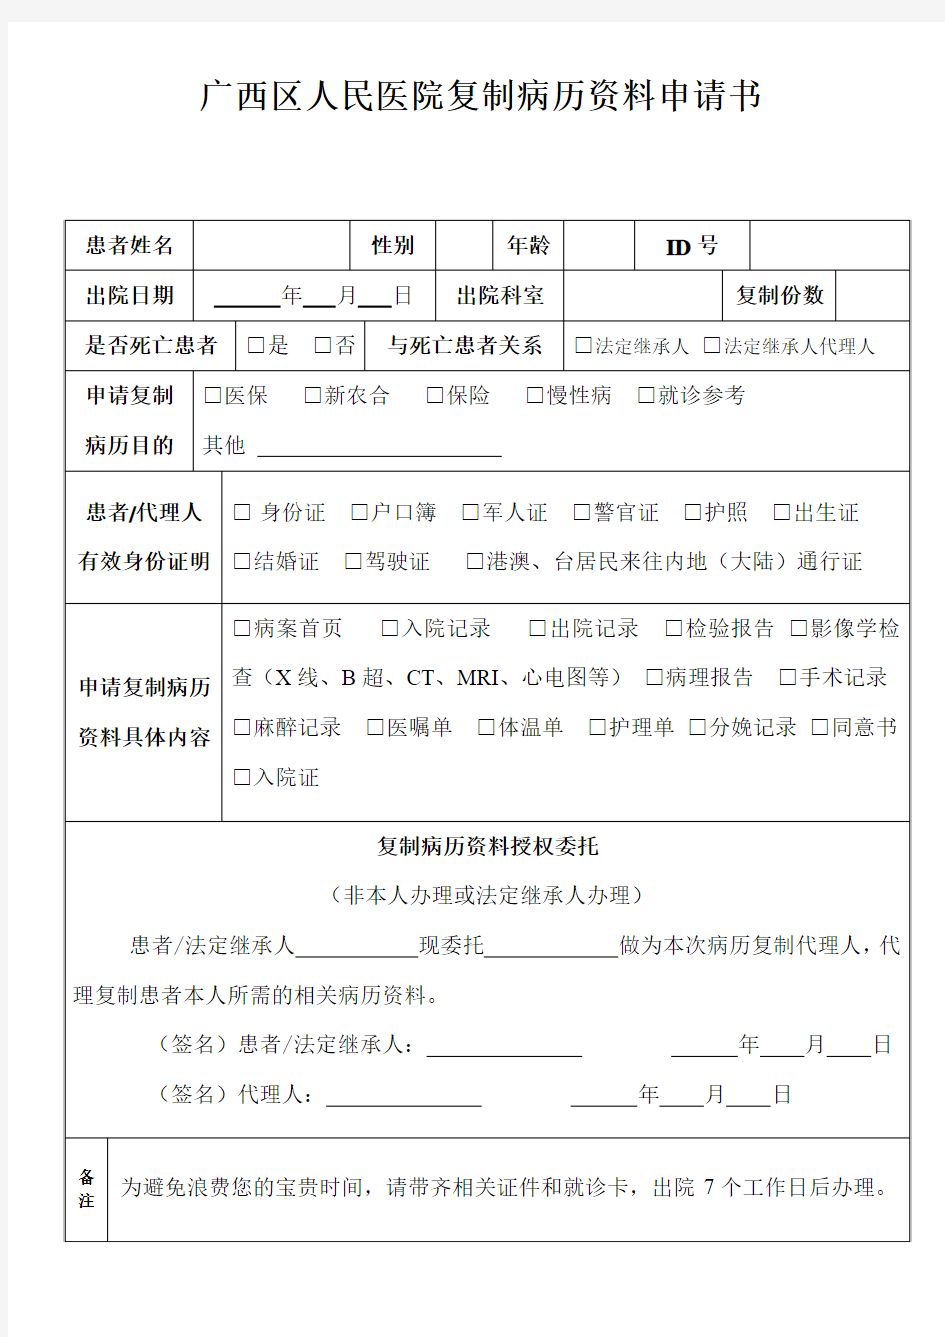 广西区医院复制病历资料申请书-广西壮族自治区人民医院